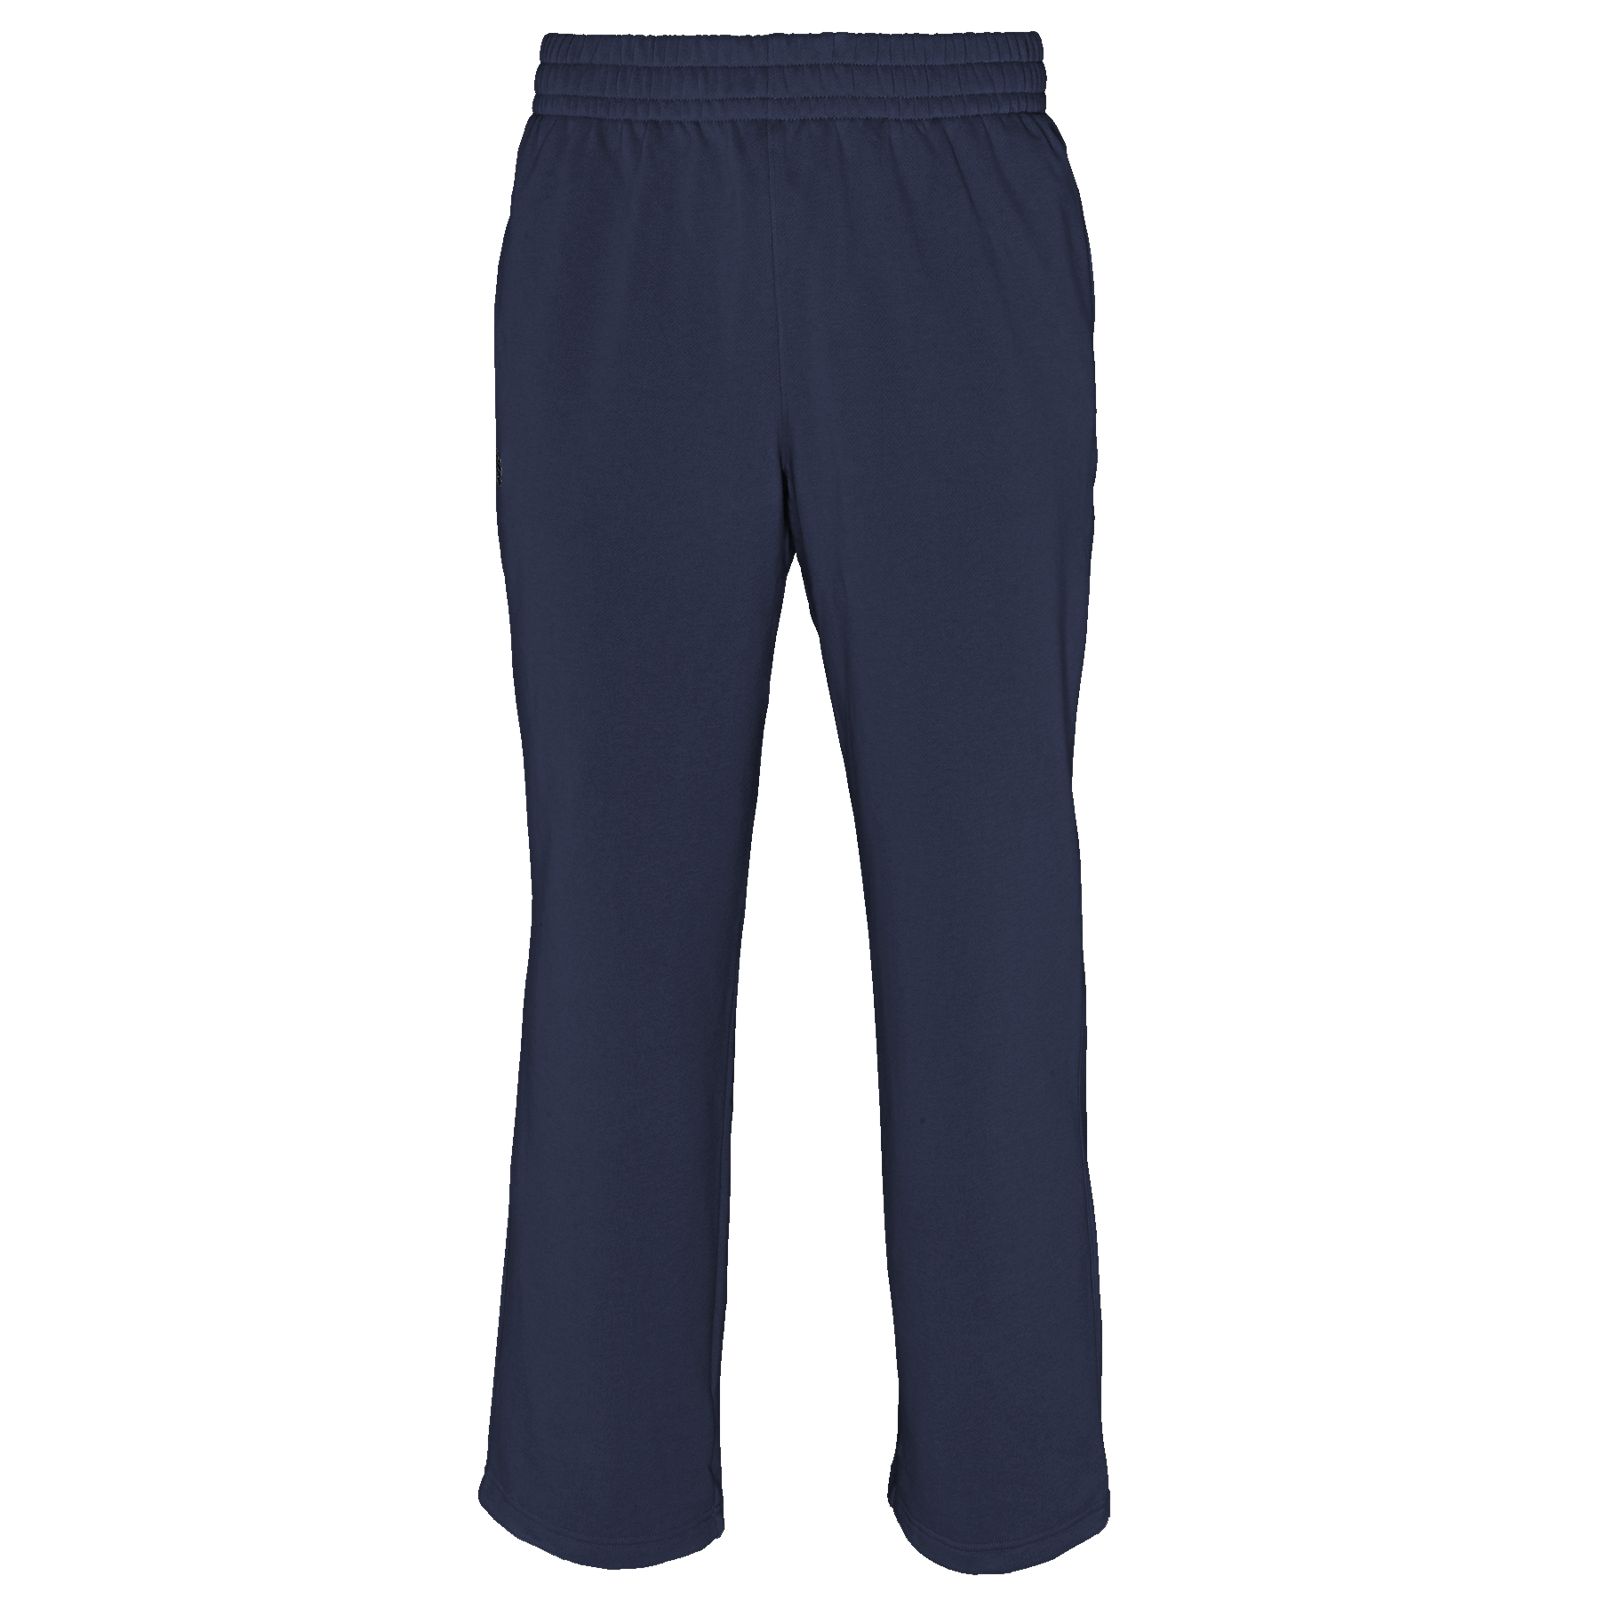 Custom Perf Sweatpants, Team Navy image number 0